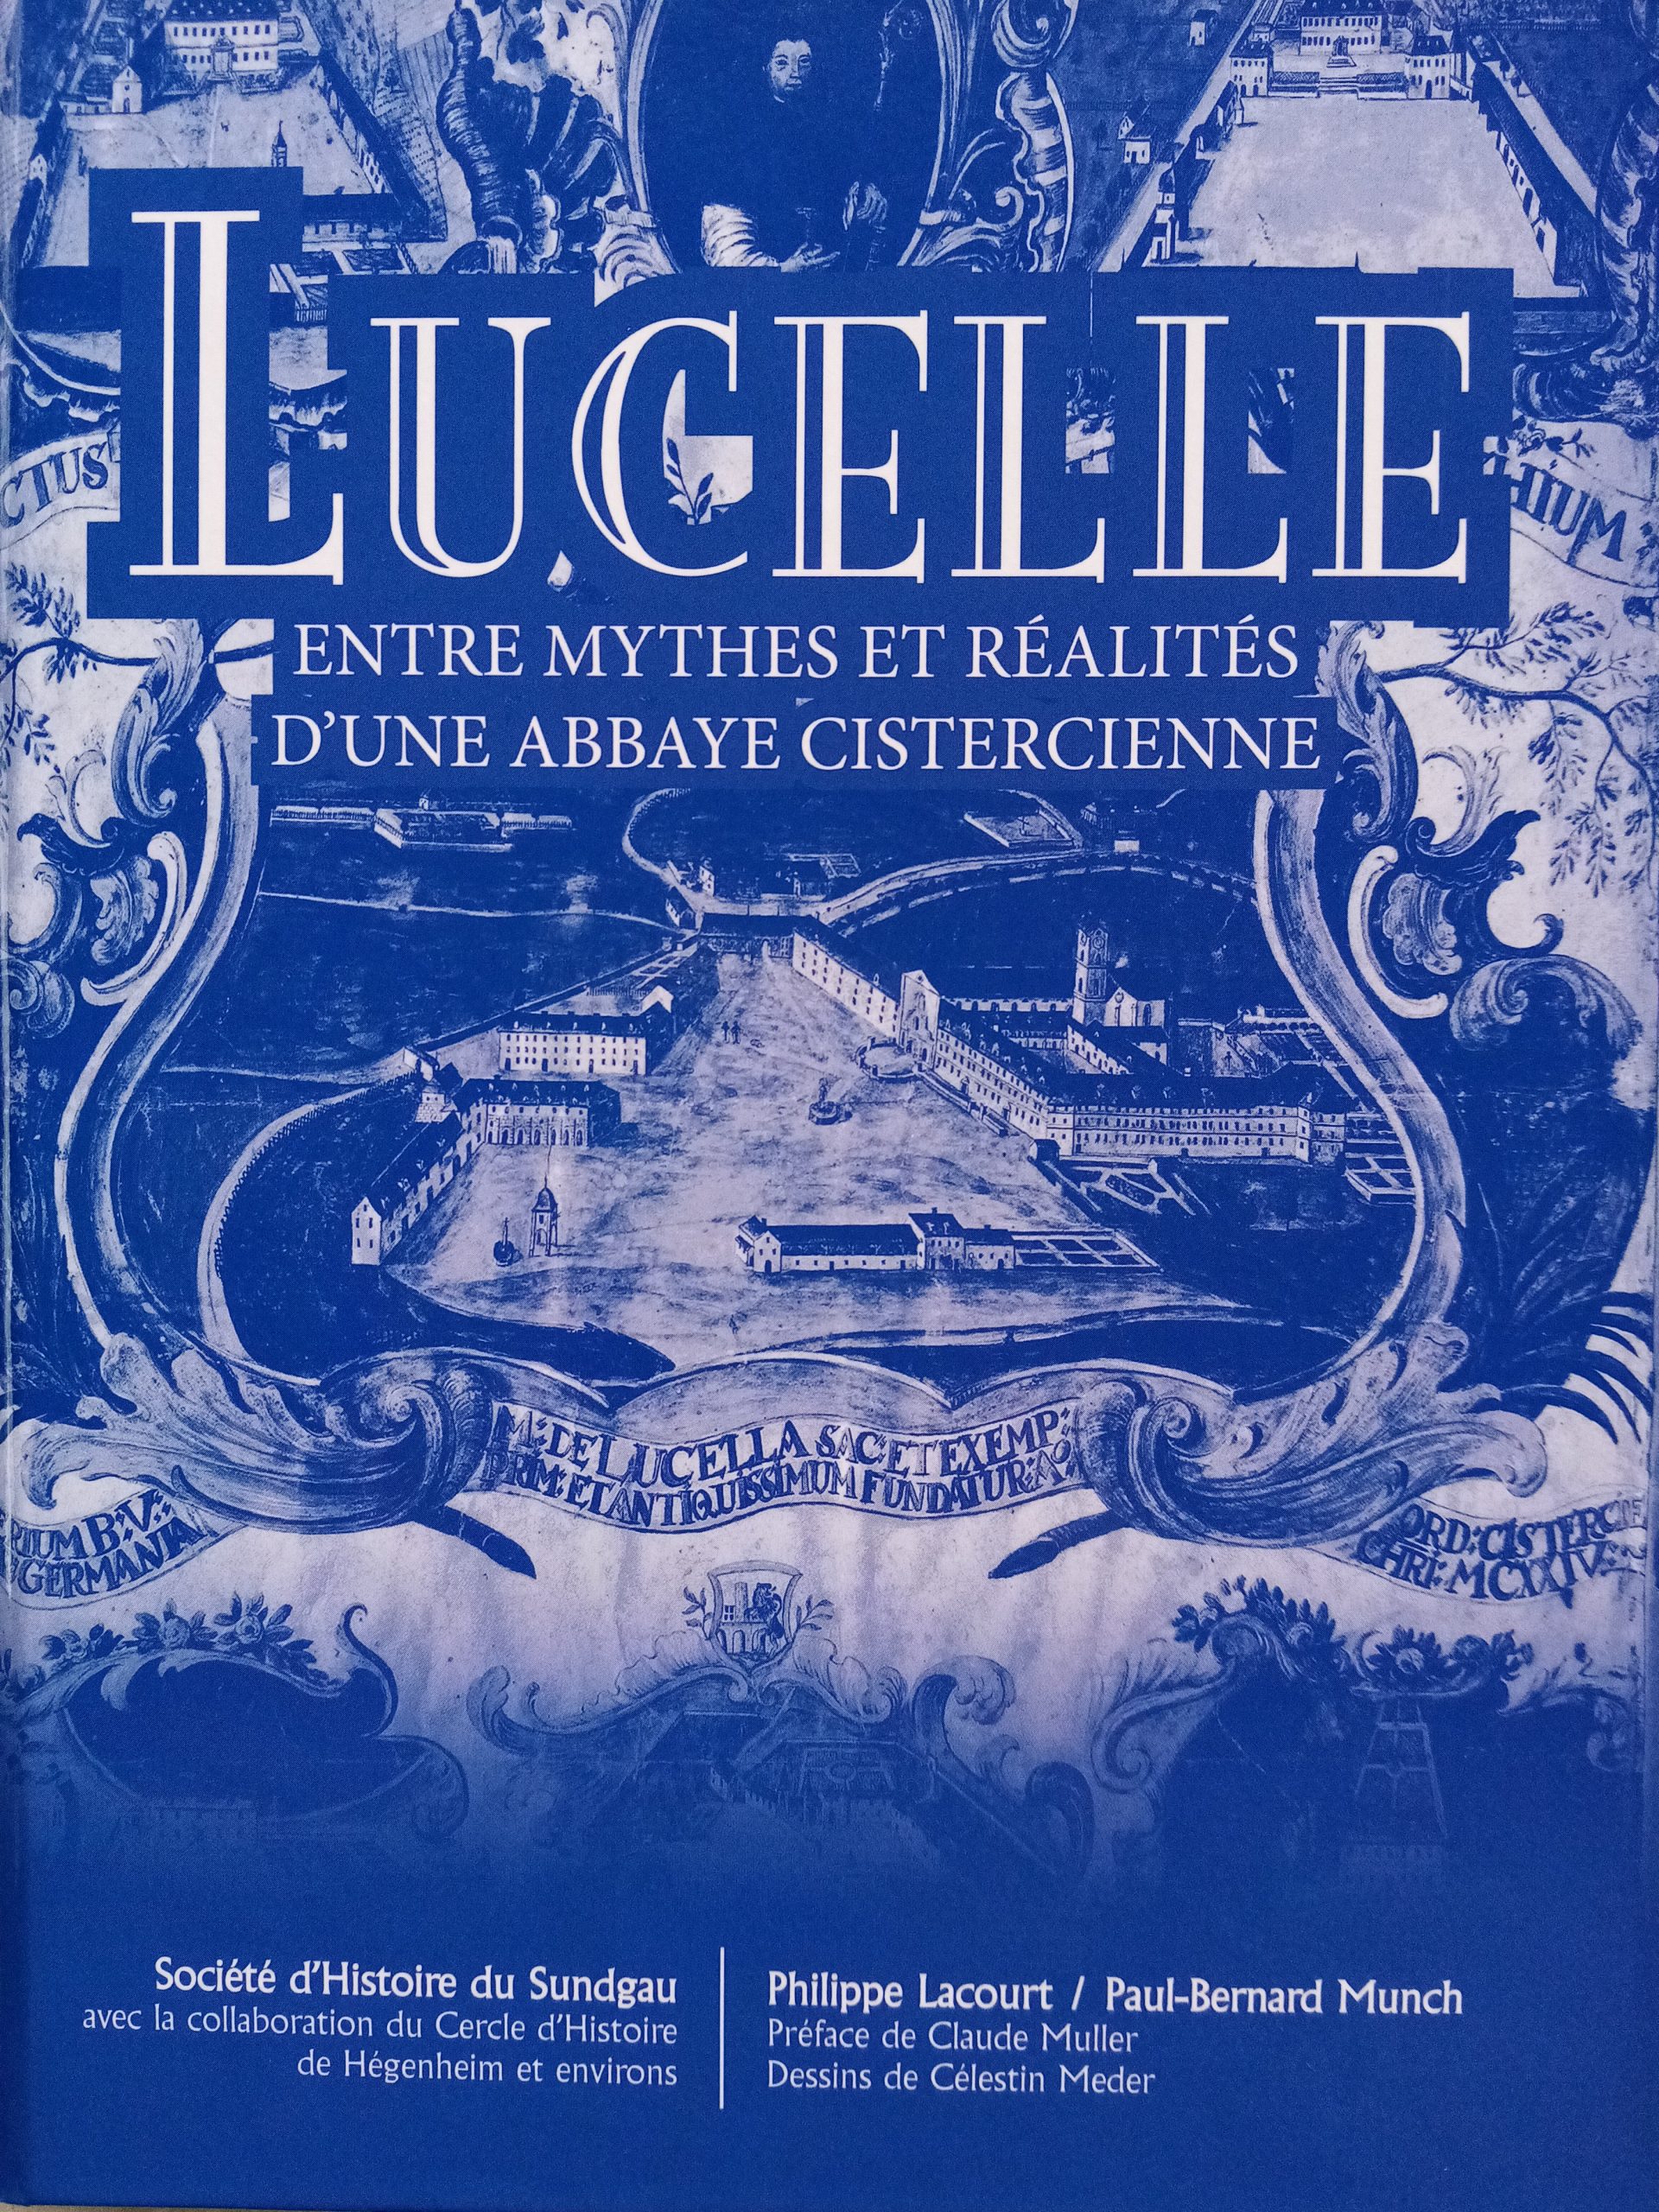 Extrait du livre « Lucelle – entre mythes et réalités d’une abbaye cistercienne »